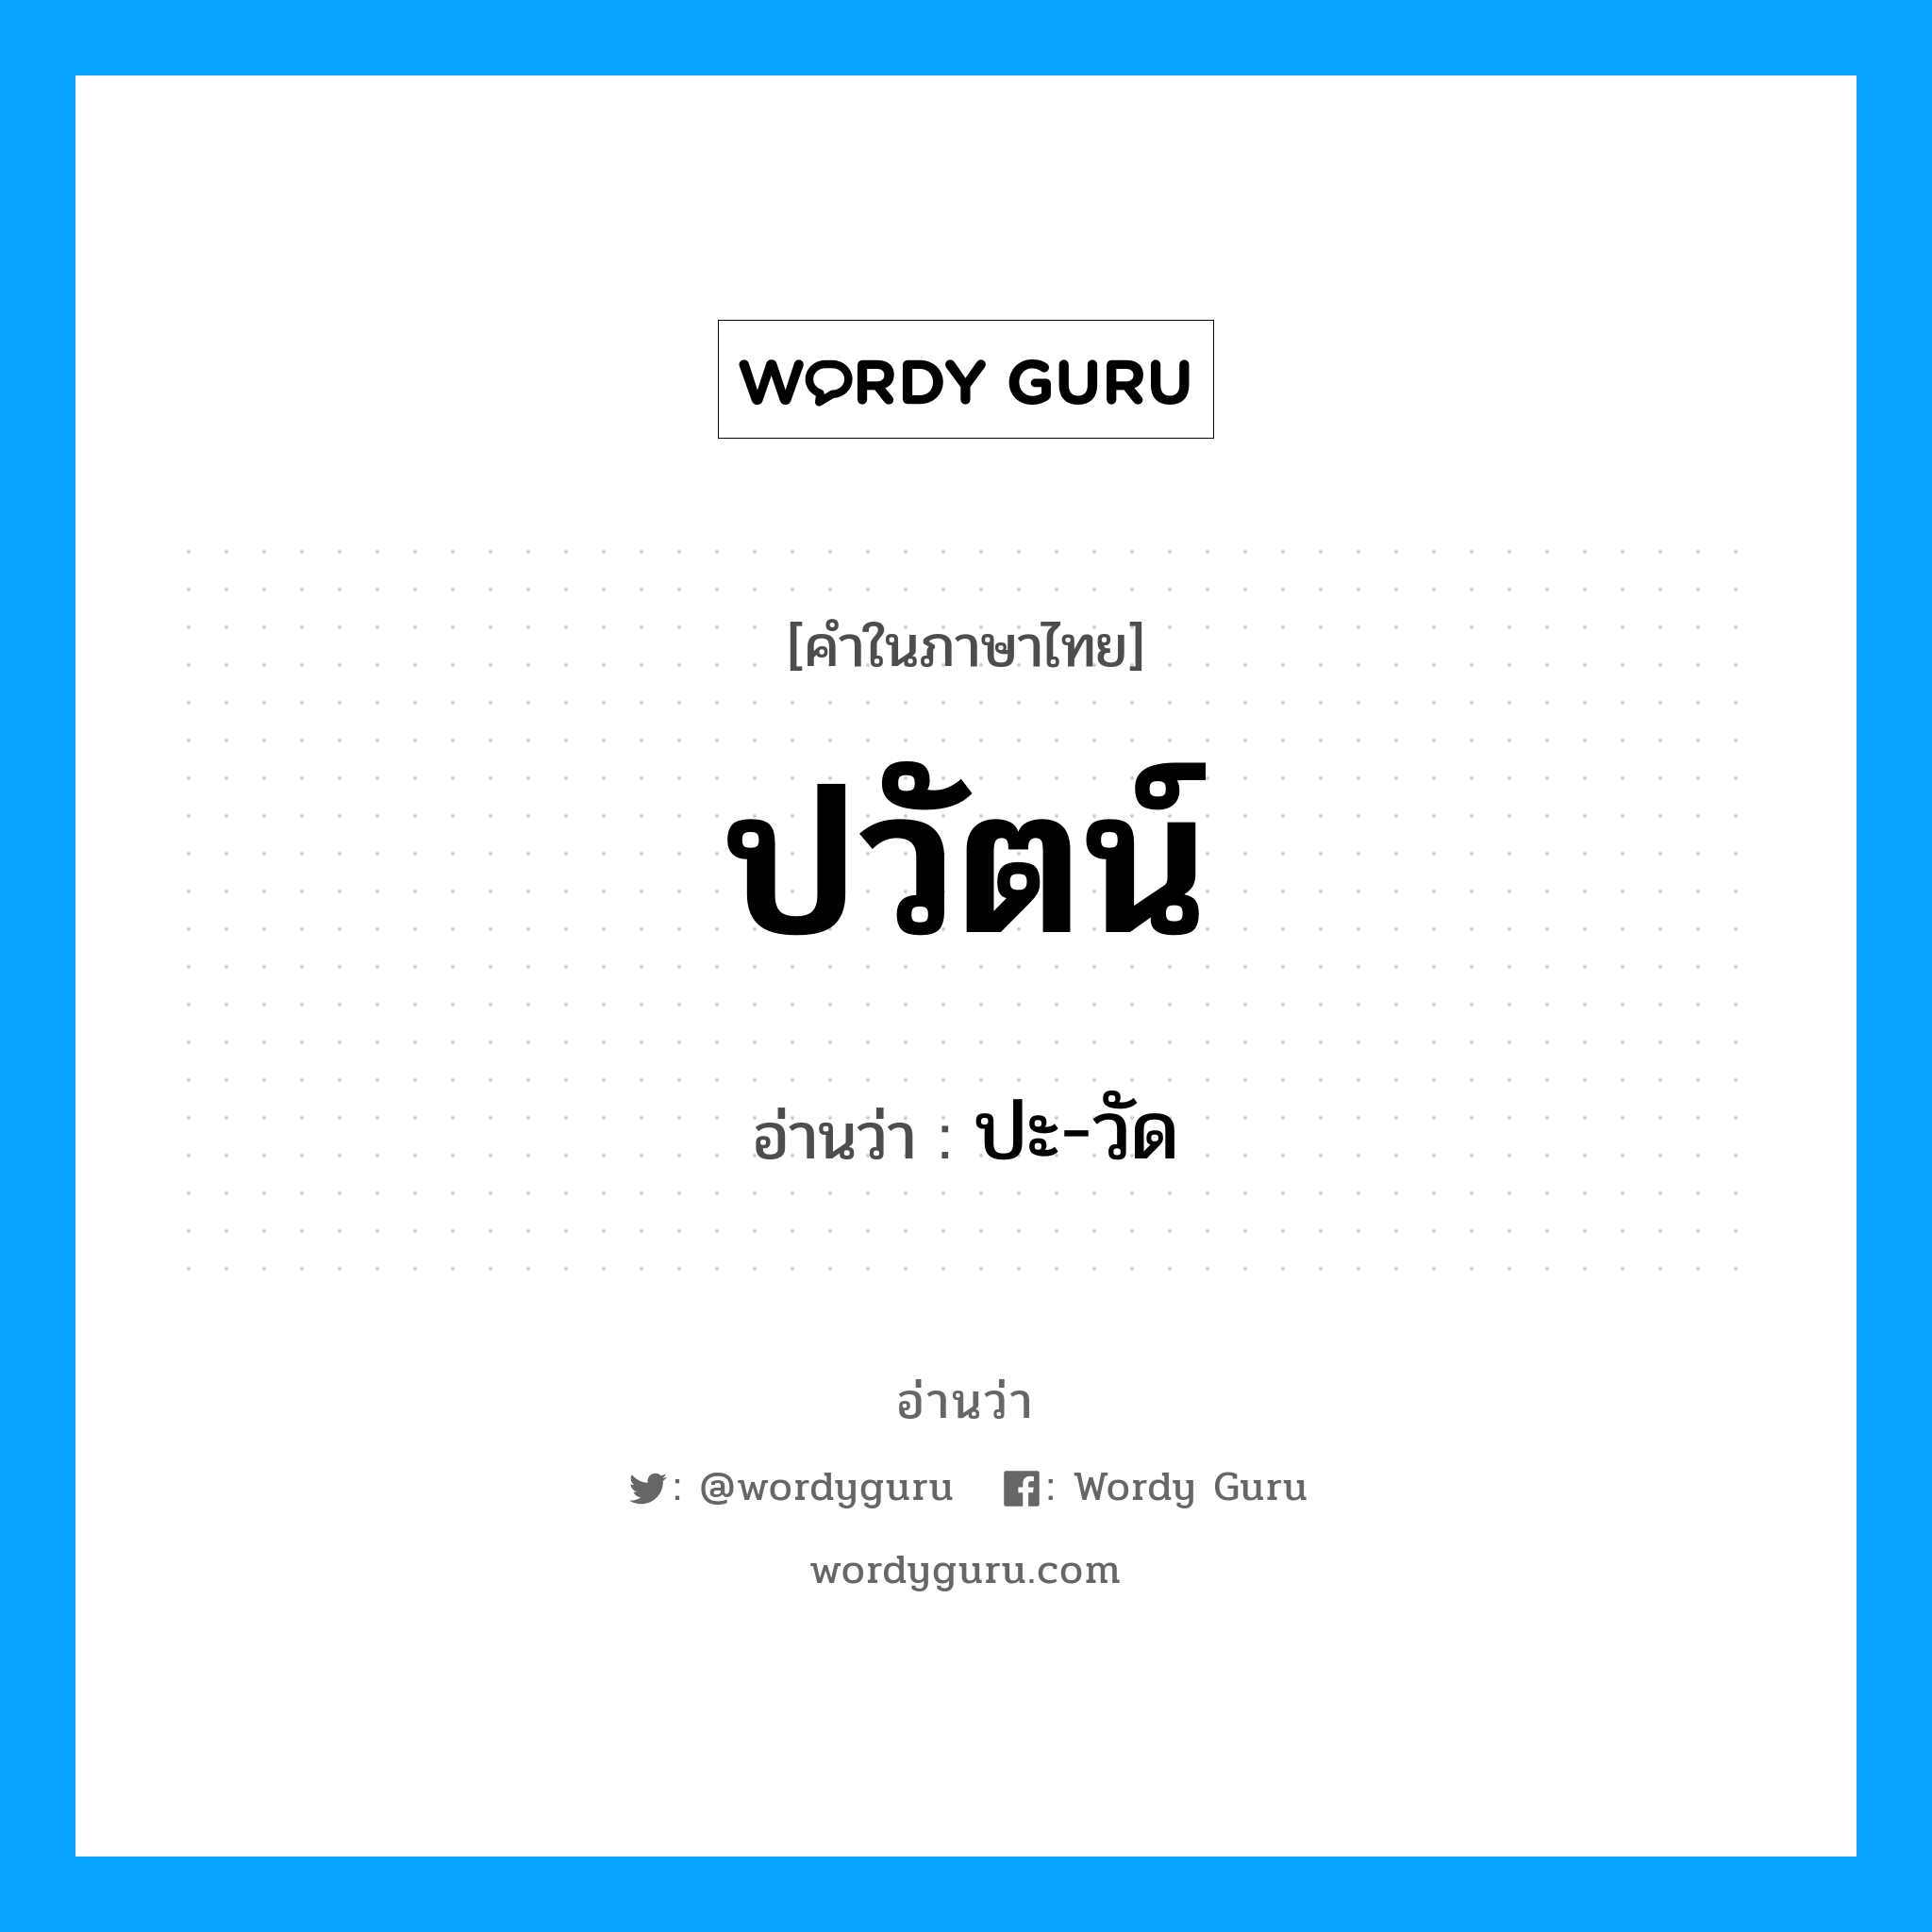 ปะ-วัด เป็นคำอ่านของคำไหน?, คำในภาษาไทย ปะ-วัด อ่านว่า ปวัตน์